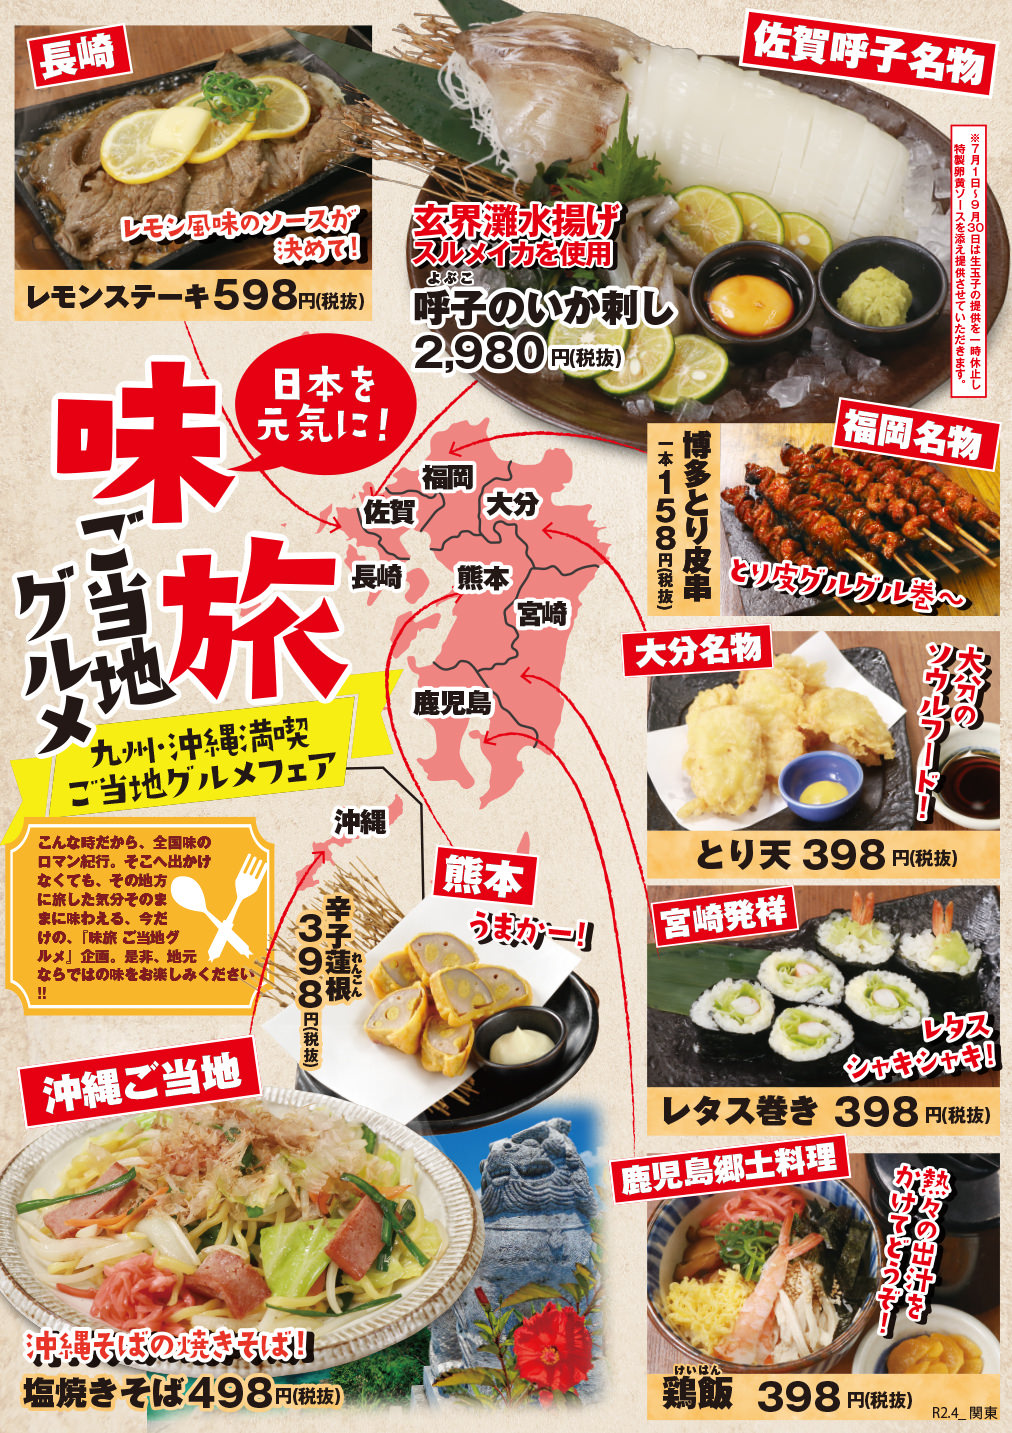 令和2年4月7日(※)から「目利きの銀次」「横濱魚萬」
「濱焼北海道魚萬」のグランドメニューが新しくなります！